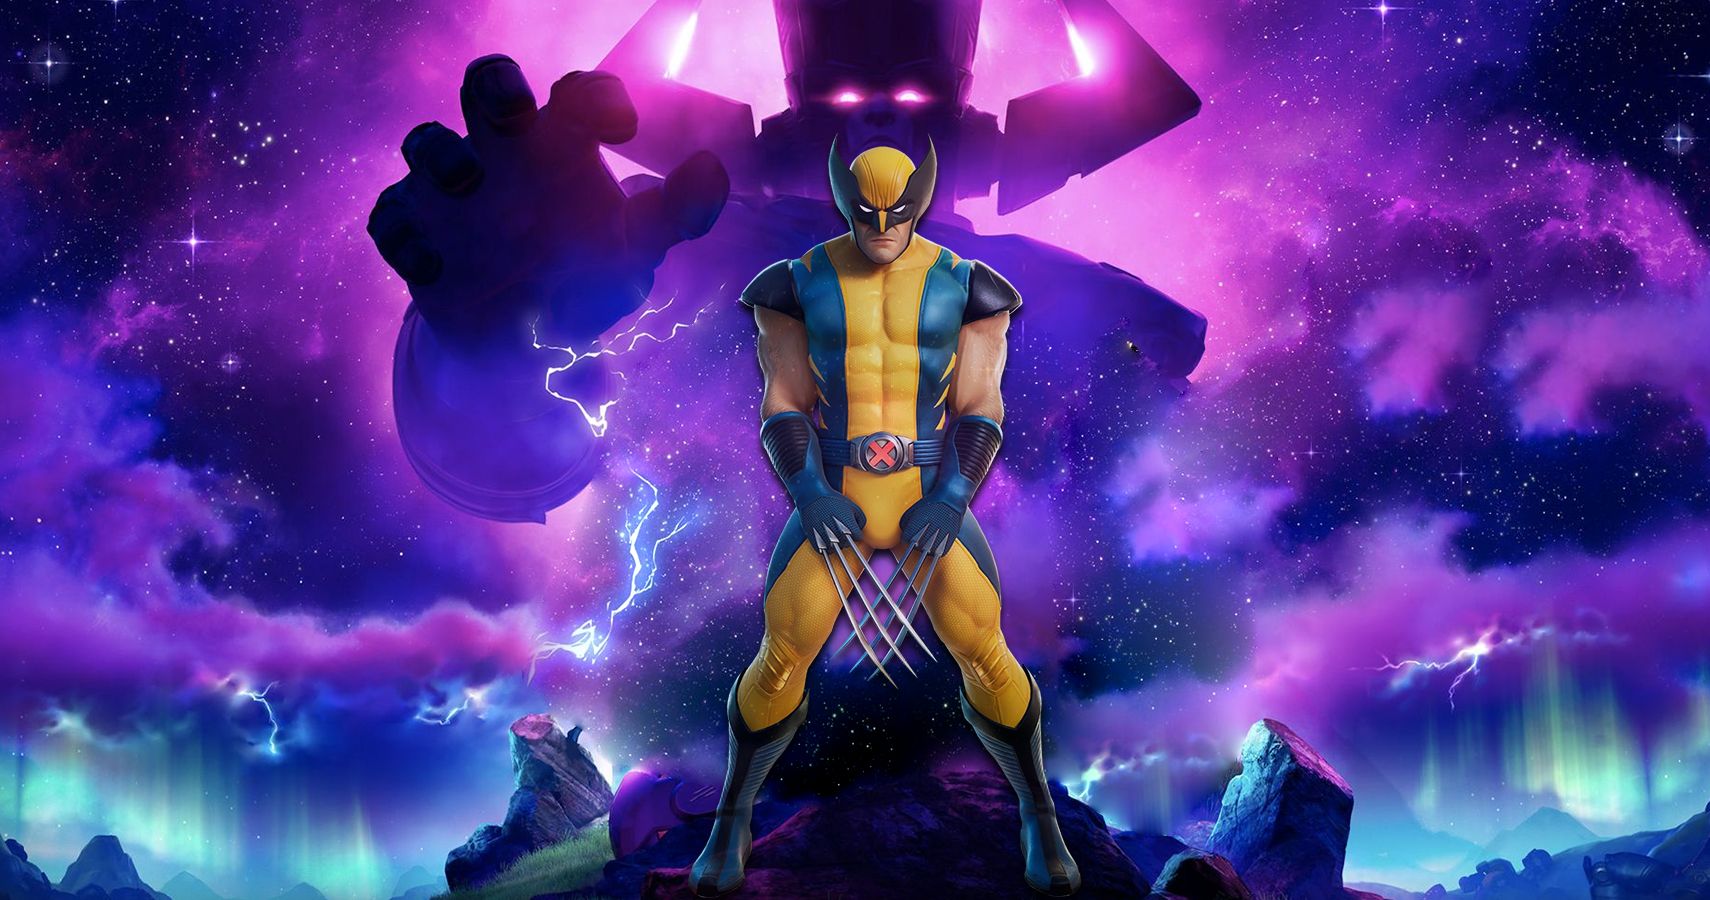 Fornite Nexus War background with Wolverine in foreground